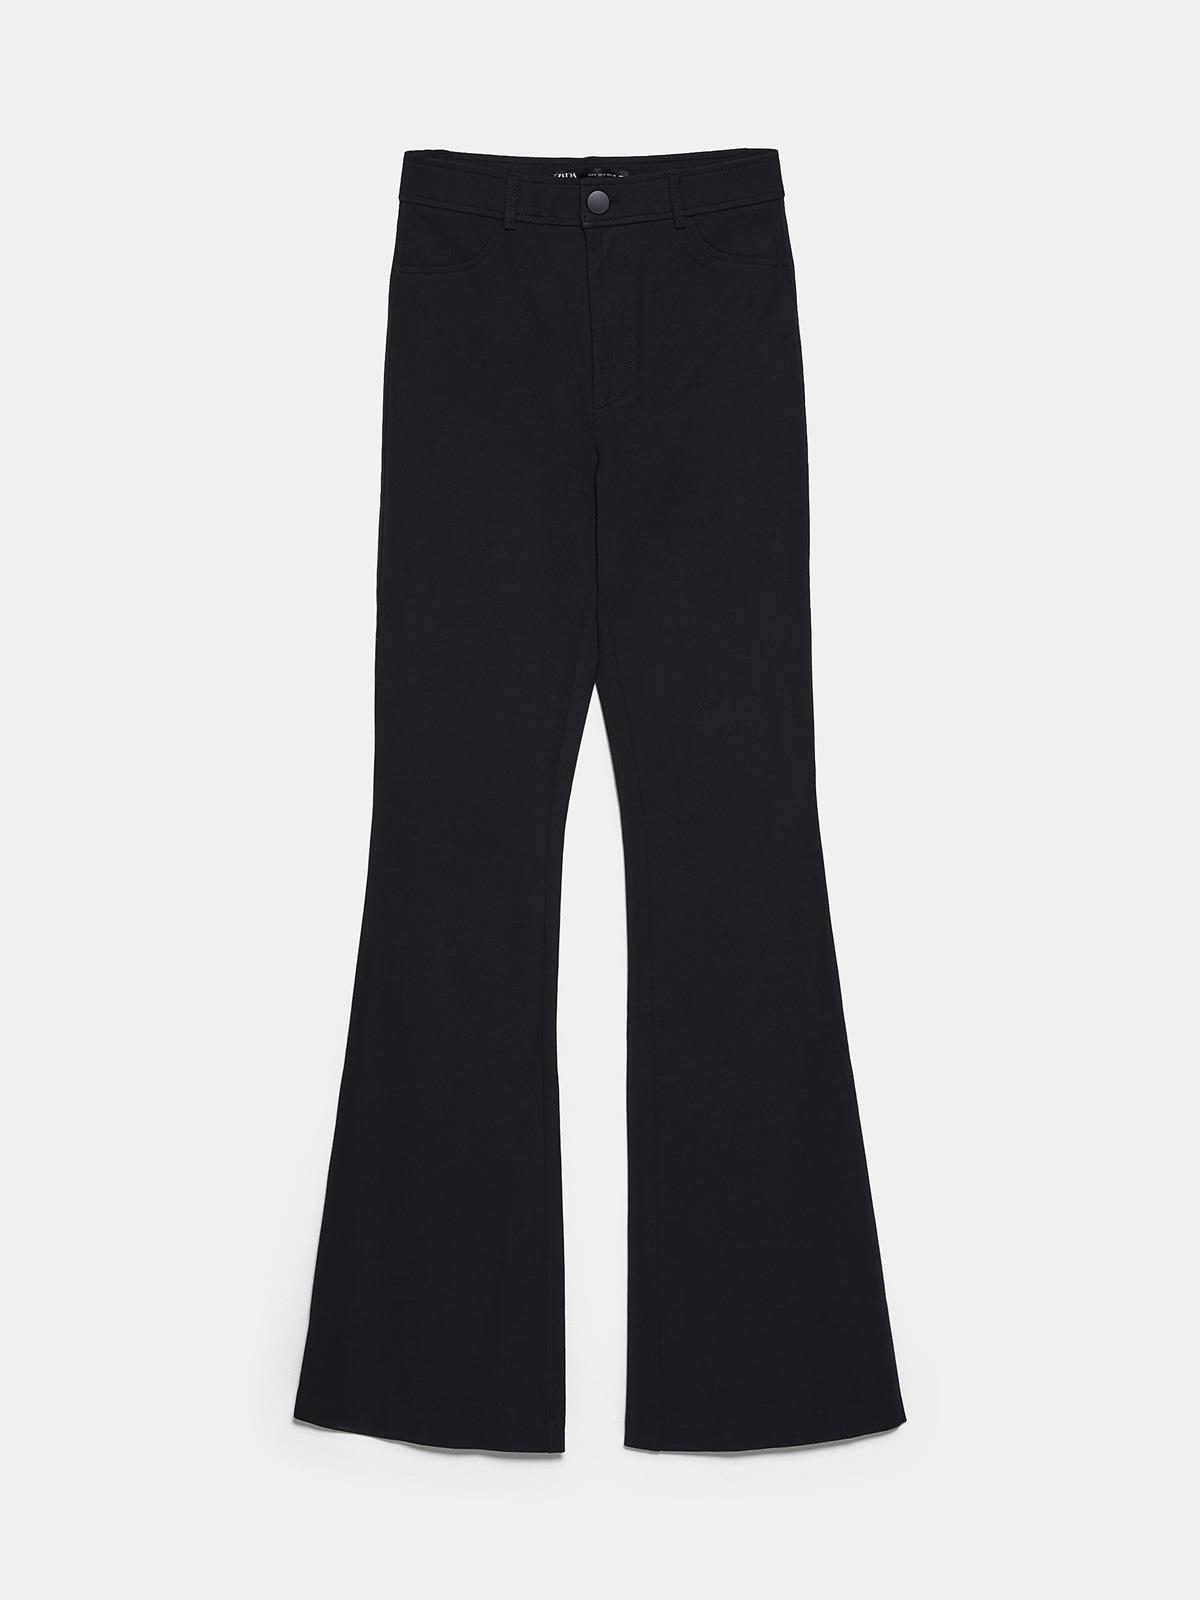 pantalon-flare-zara. Pantalón negro estilo 'flare'